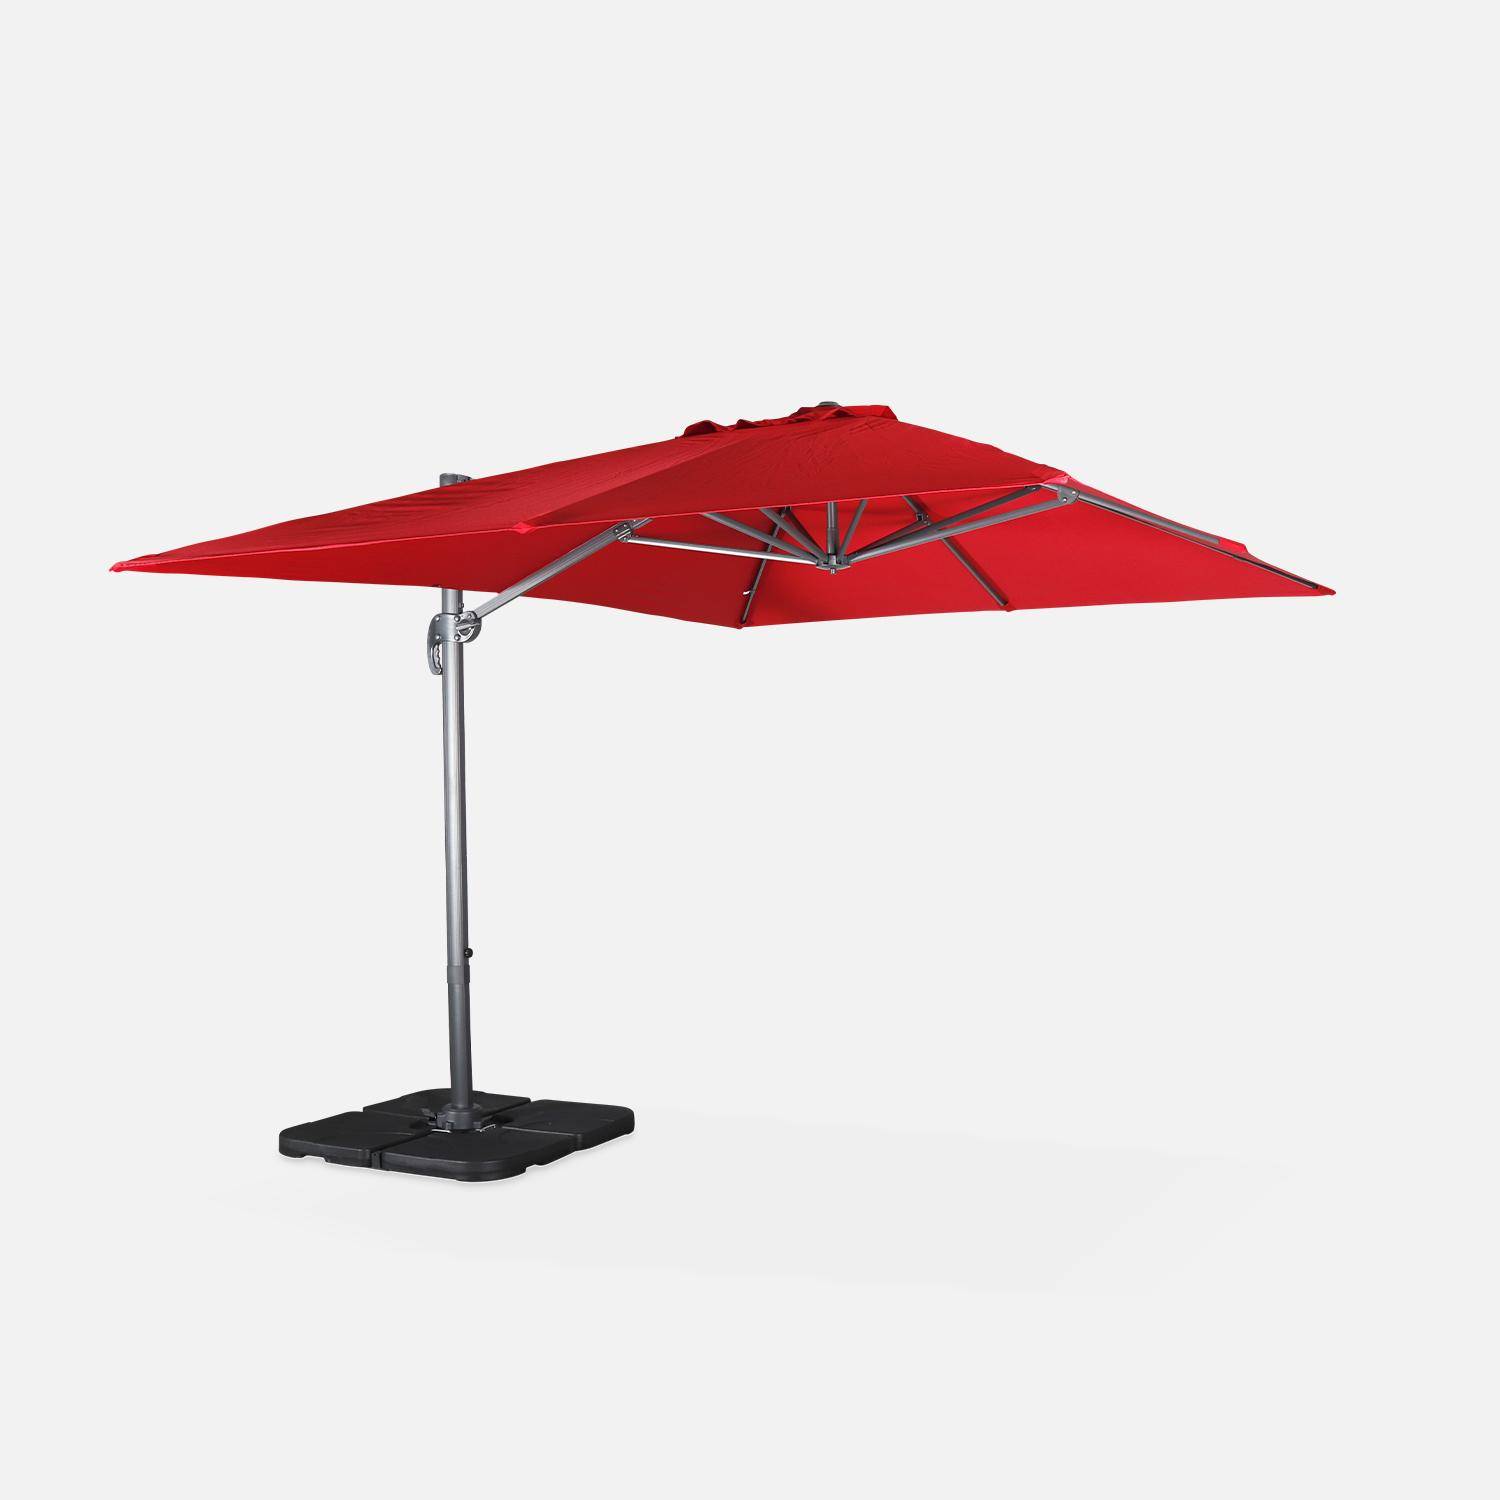 Rode rechthoekige parasol 3x4m + verzwaarde tegels 50x50cm Photo3